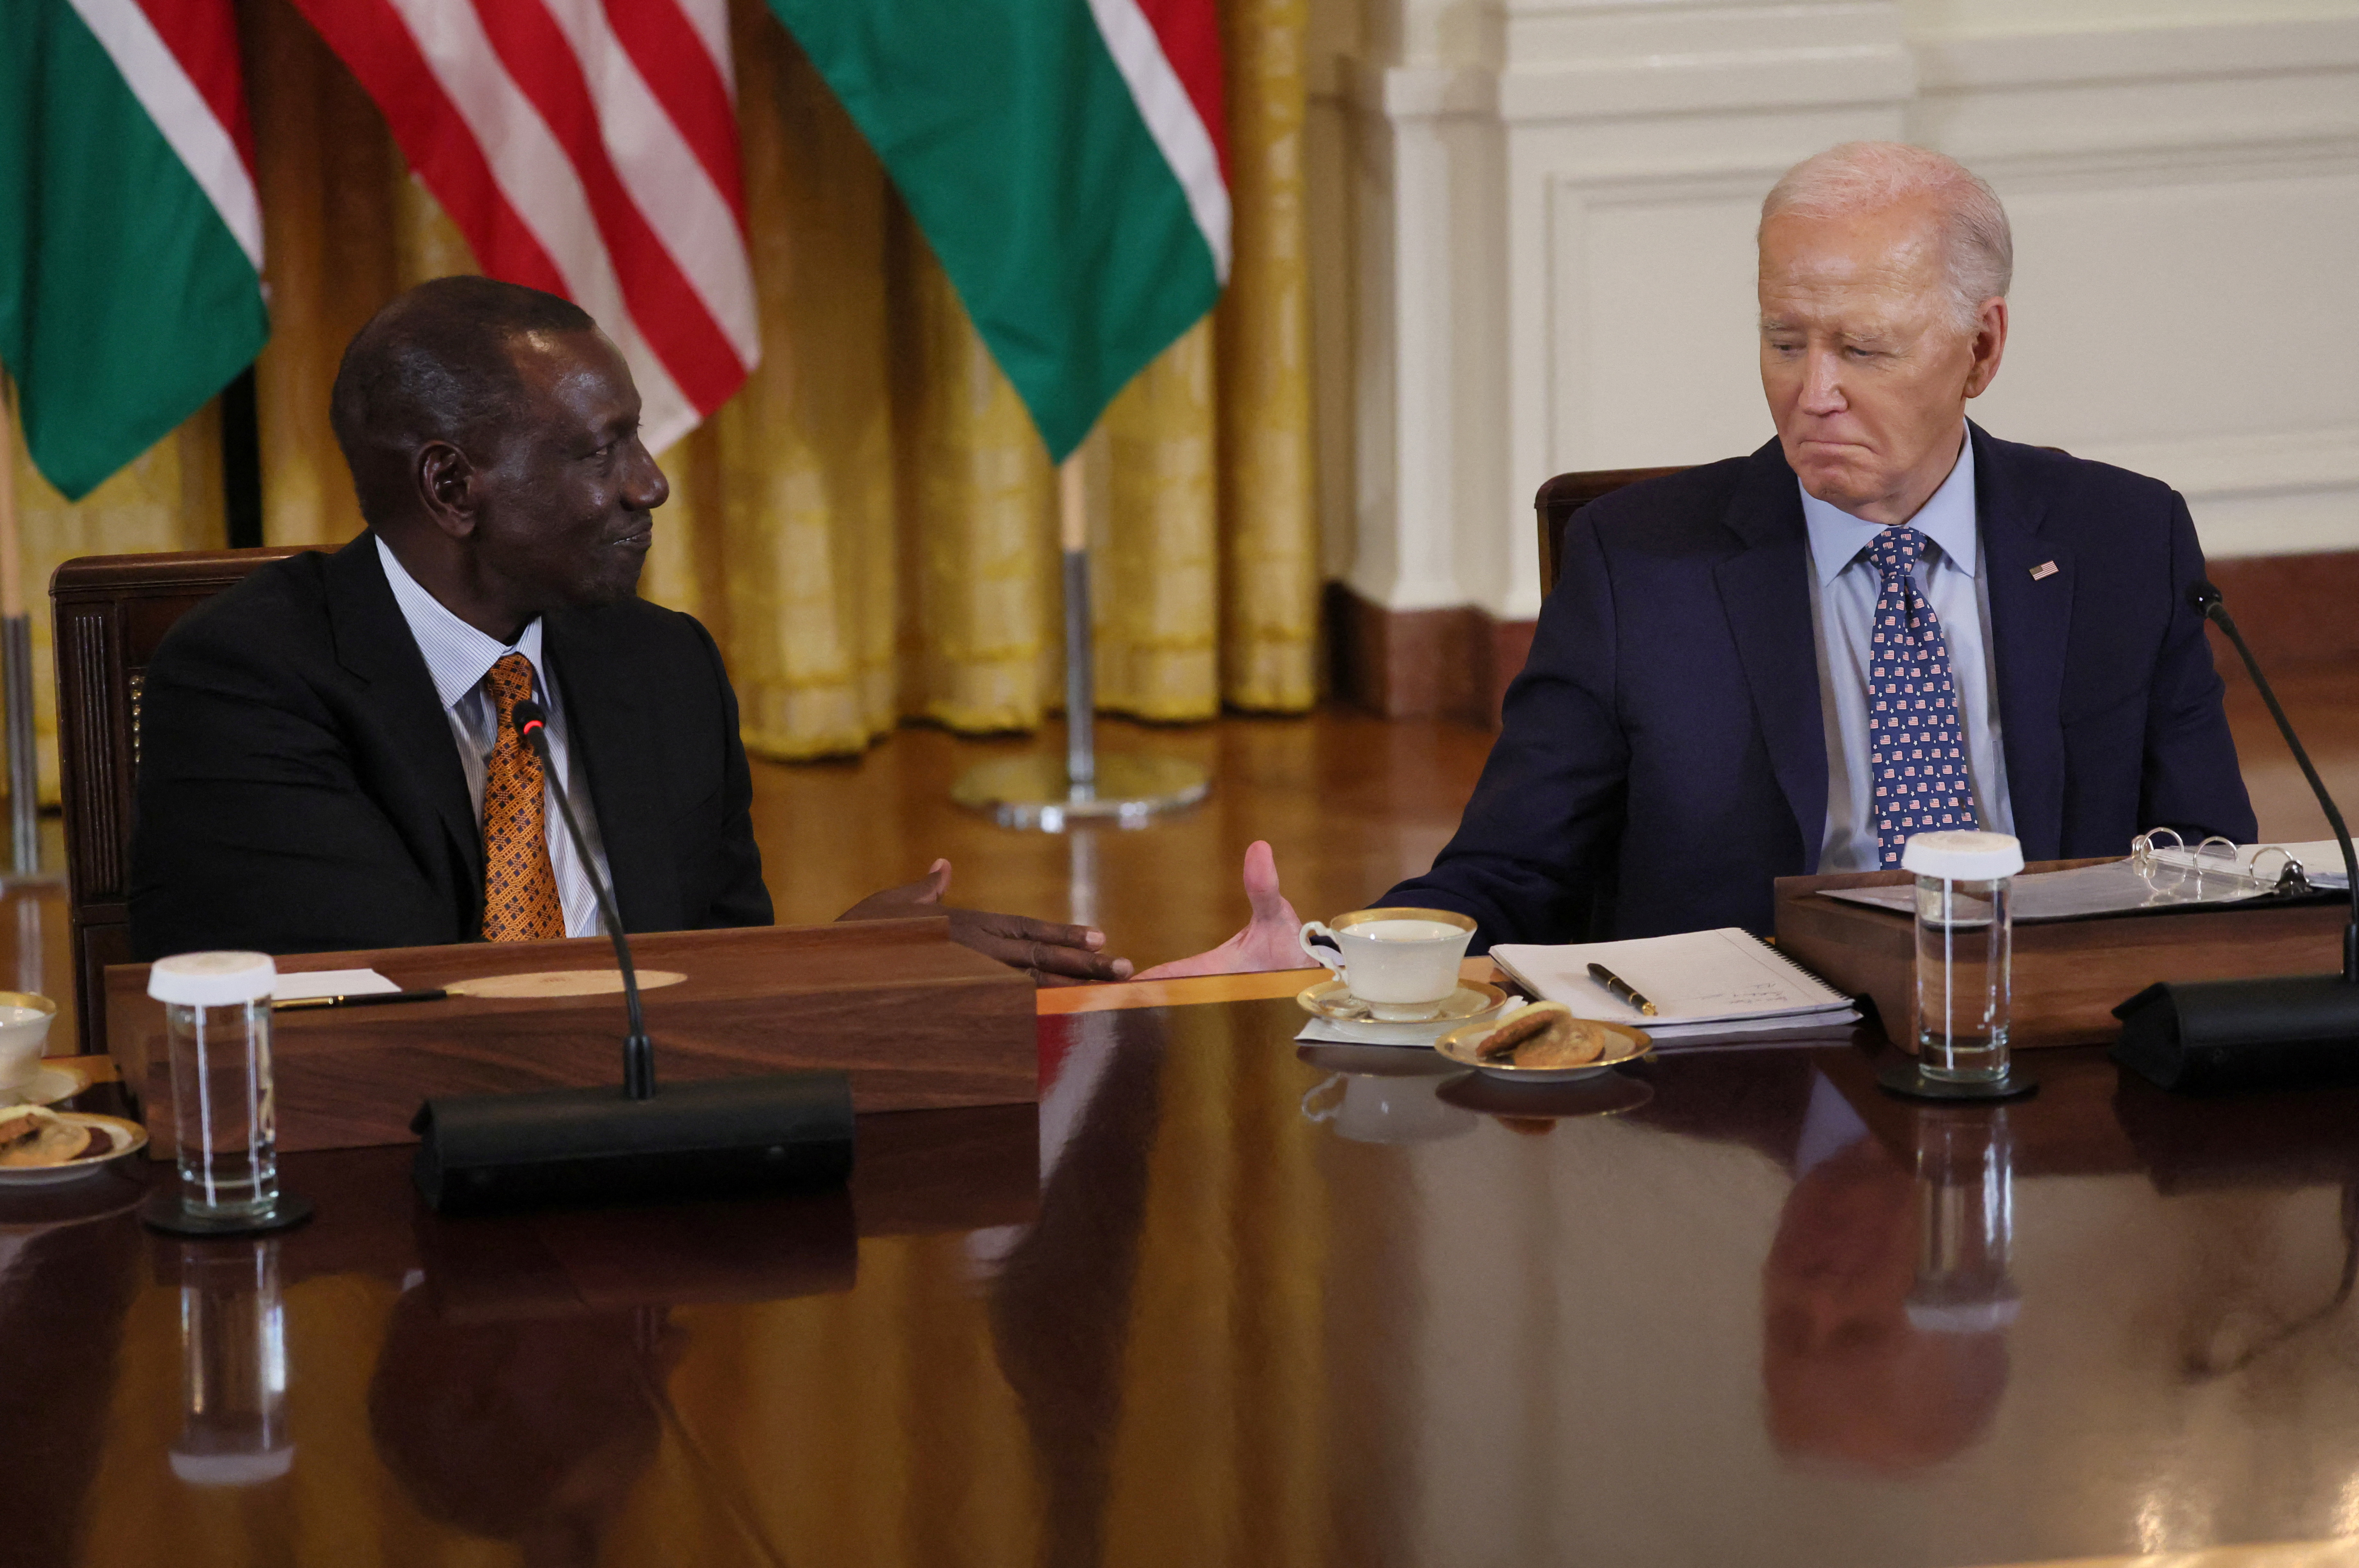 U.S. President Biden welcomes Kenyan President Ruto to the White House in Washington